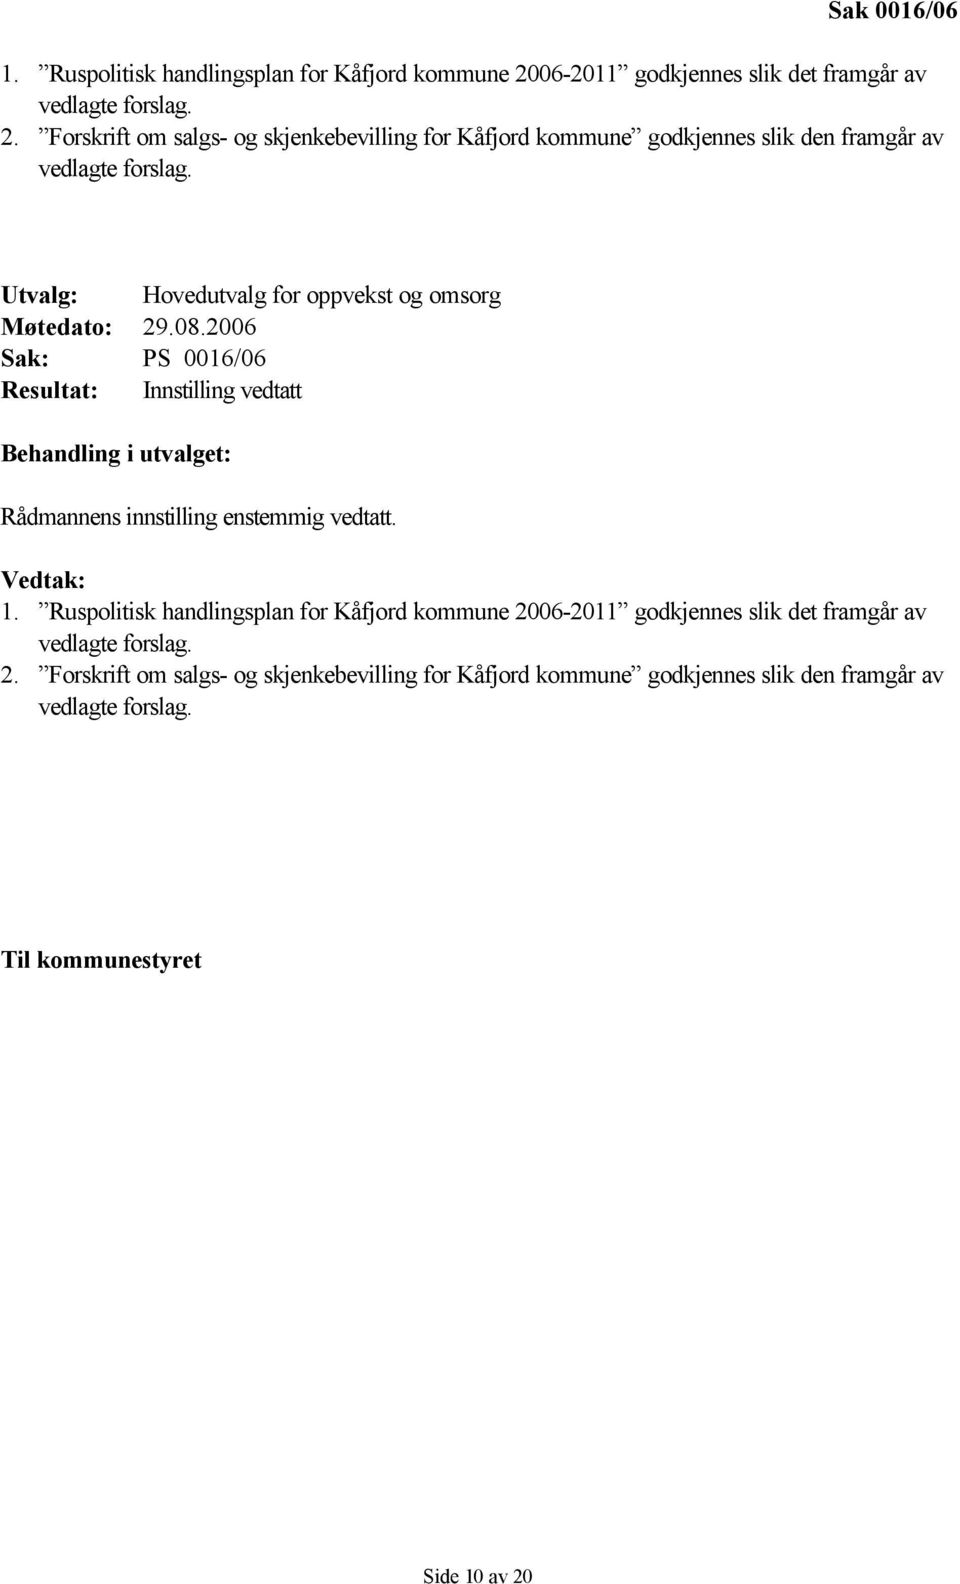 Forskrift om salgs- og skjenkebevilling for Kåfjord kommune godkjennes slik den framgår av vedlagte forslag. Utvalg: Hovedutvalg for oppvekst og omsorg Møtedato: 29.